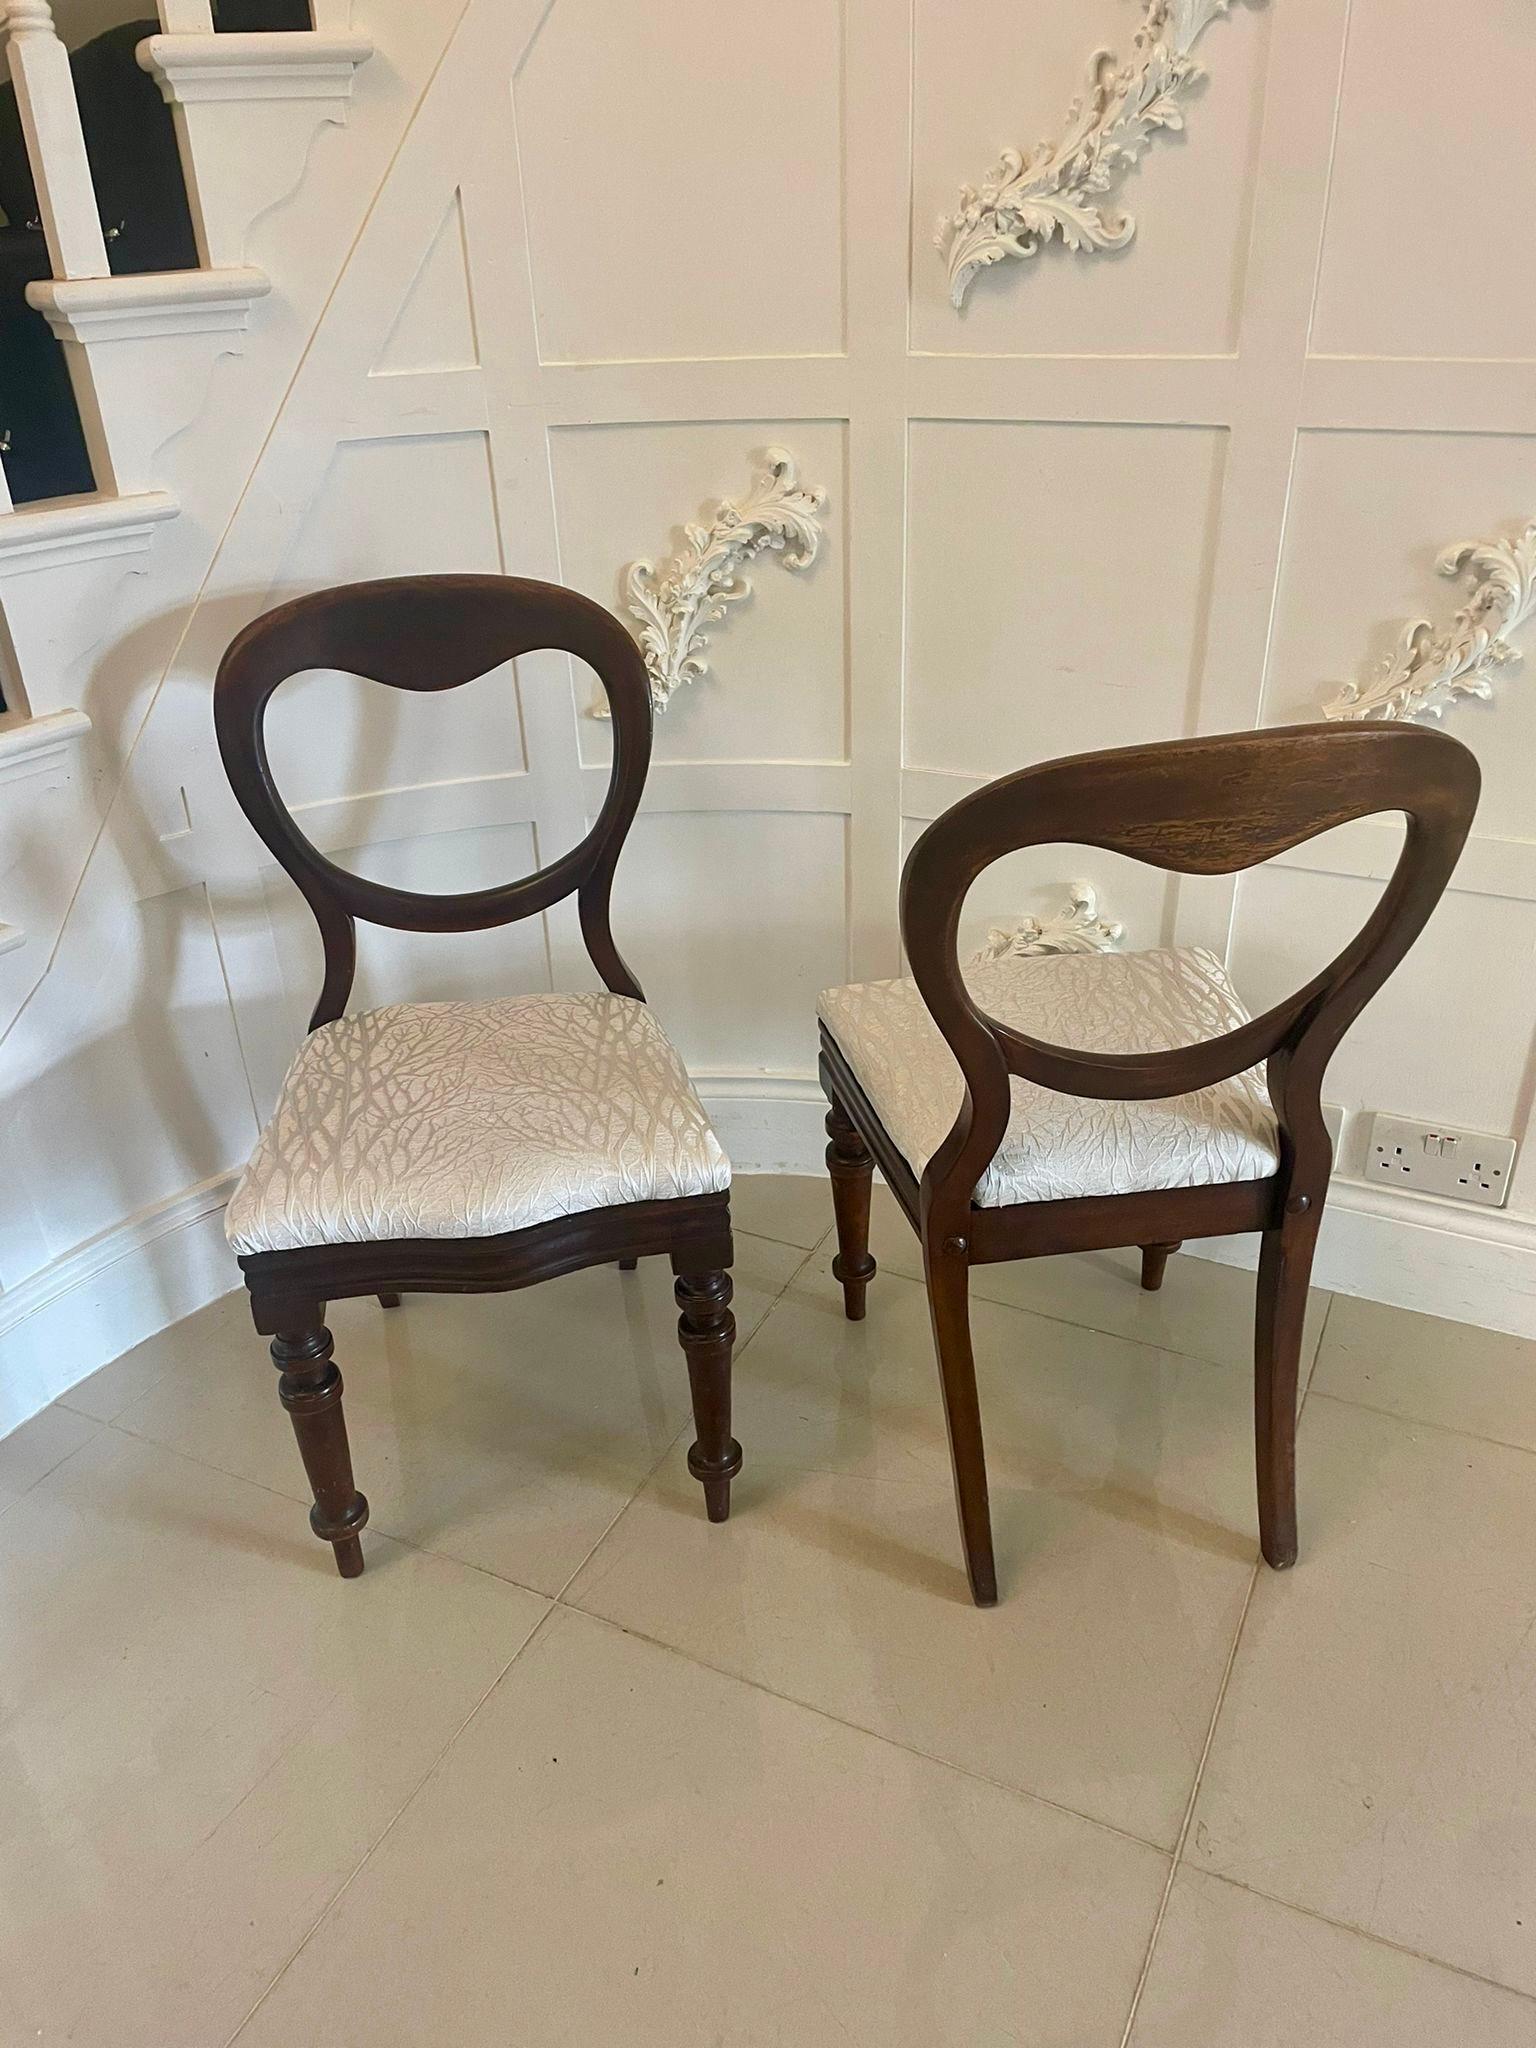 Zwei antike Stühle aus Mahagoni in viktorianischer Qualität mit einer herzförmigen Rückenlehne aus Mahagoni, neu gepolsterten Sitzen in einem hochwertigen hellgrauen Stoff, die auf gedrechselten, spitz zulaufenden Beinen an der Vorderseite und nach